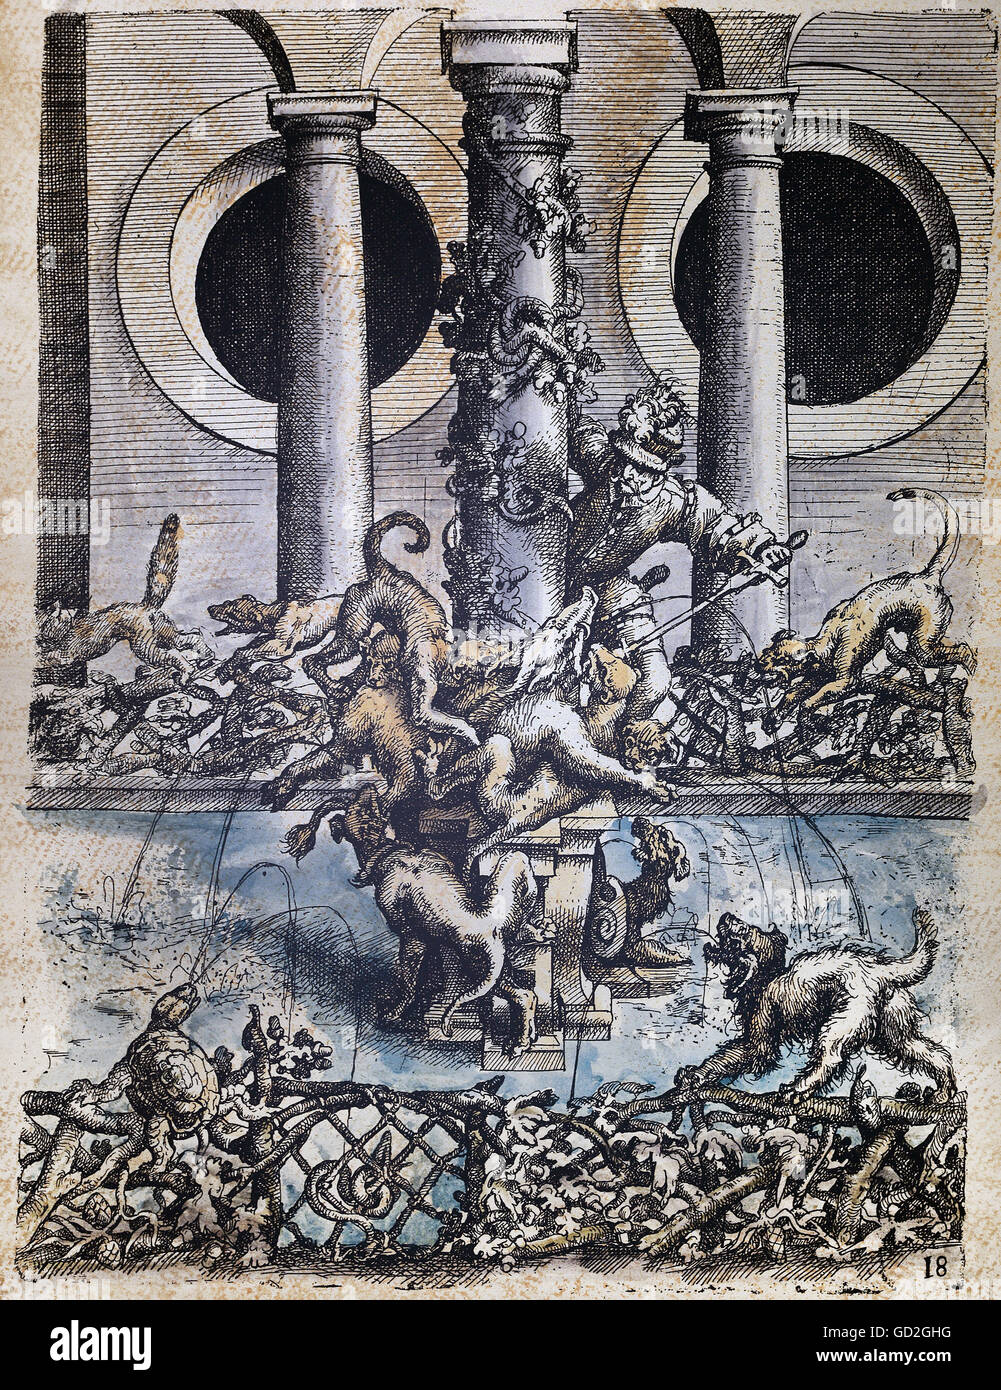 Bildende Kunst, Dietterlin, Wendel (1550-/1551-1599), Ätzen, Konzept für eine Jagd Brunnen mit wildschwein jagd, aus: "Architectura", Nürnberg, 1598, Privatsammlung, Artist's Urheberrecht nicht geklärt zu werden. Stockfoto